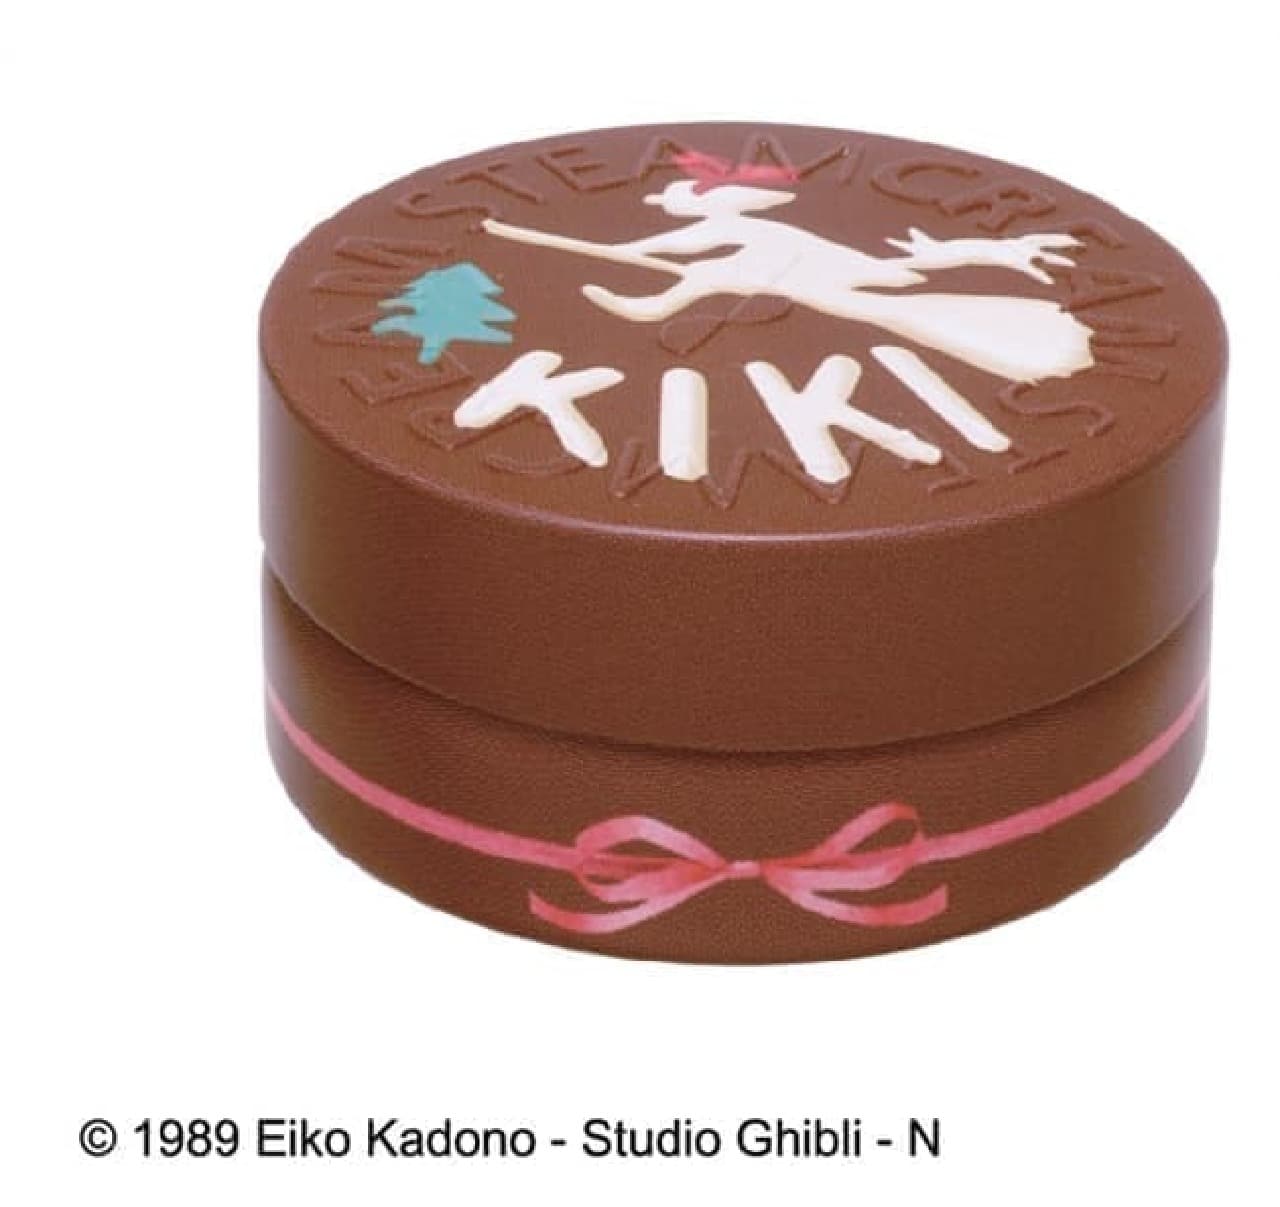 どんぐり共和国のDonguri Closetから、新商品「キキチョコケーキシリーズ」